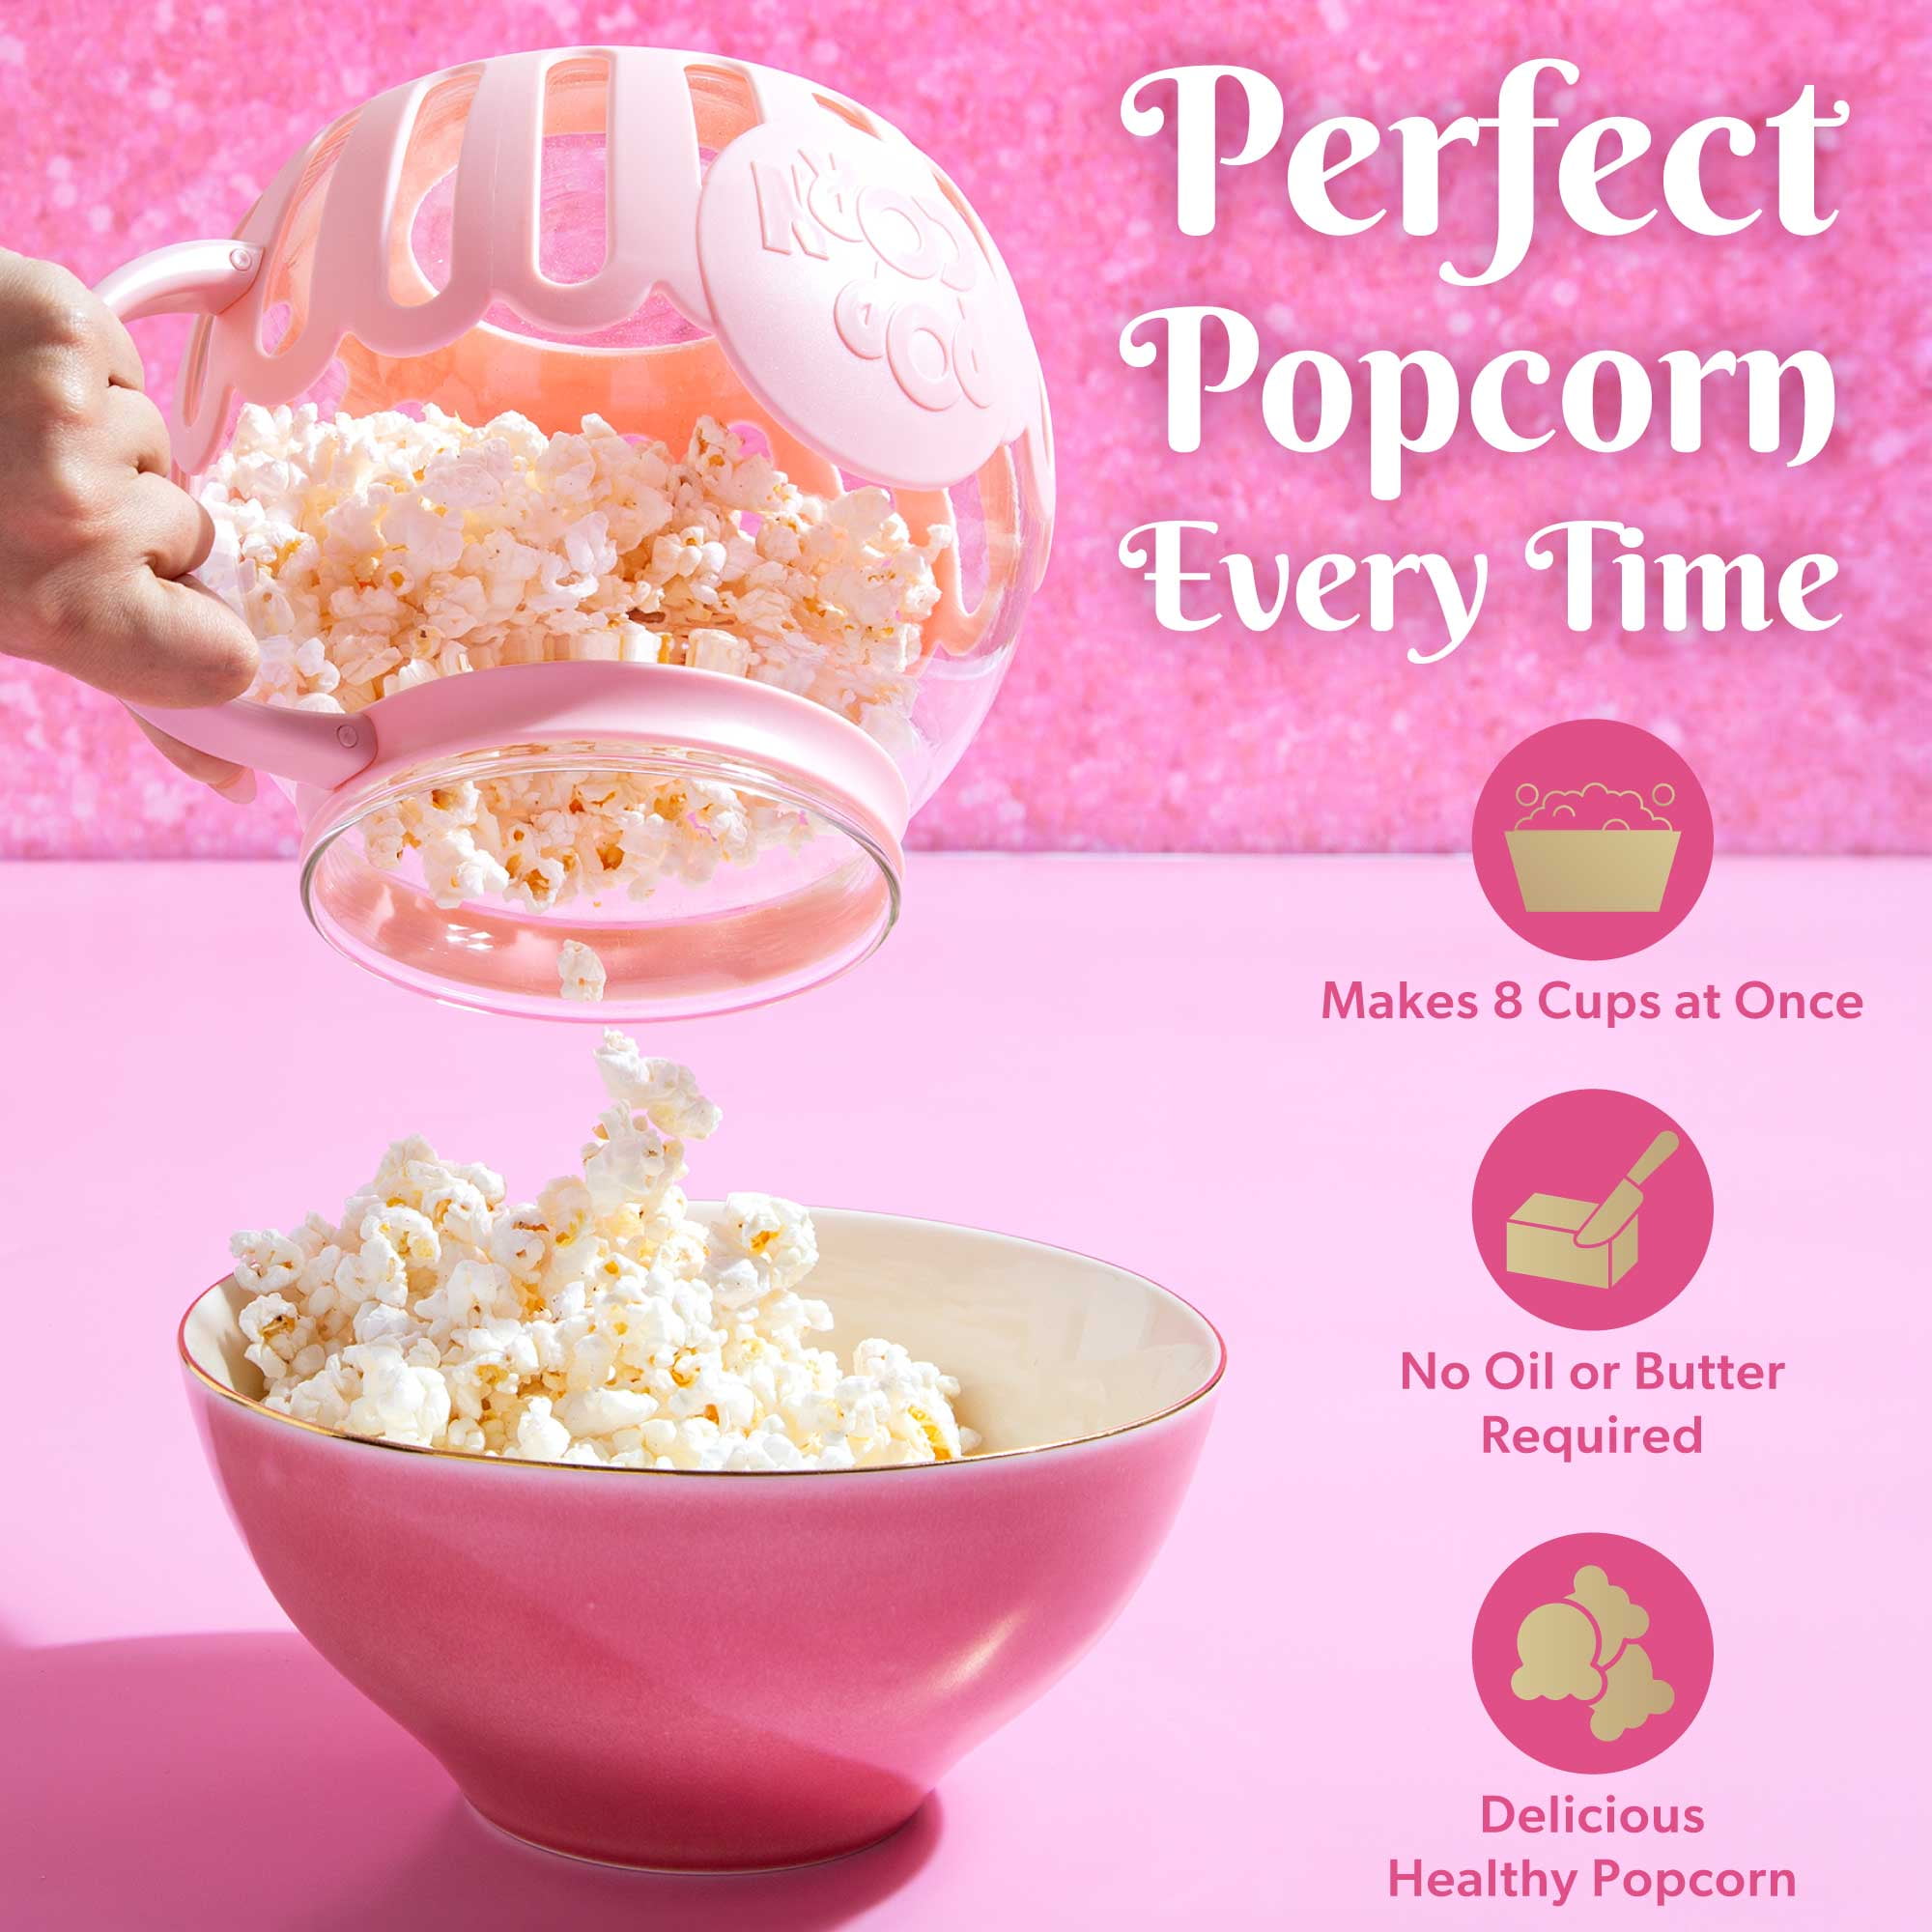 FREE Paris Hilton Popcorn Makers & Cookware Line